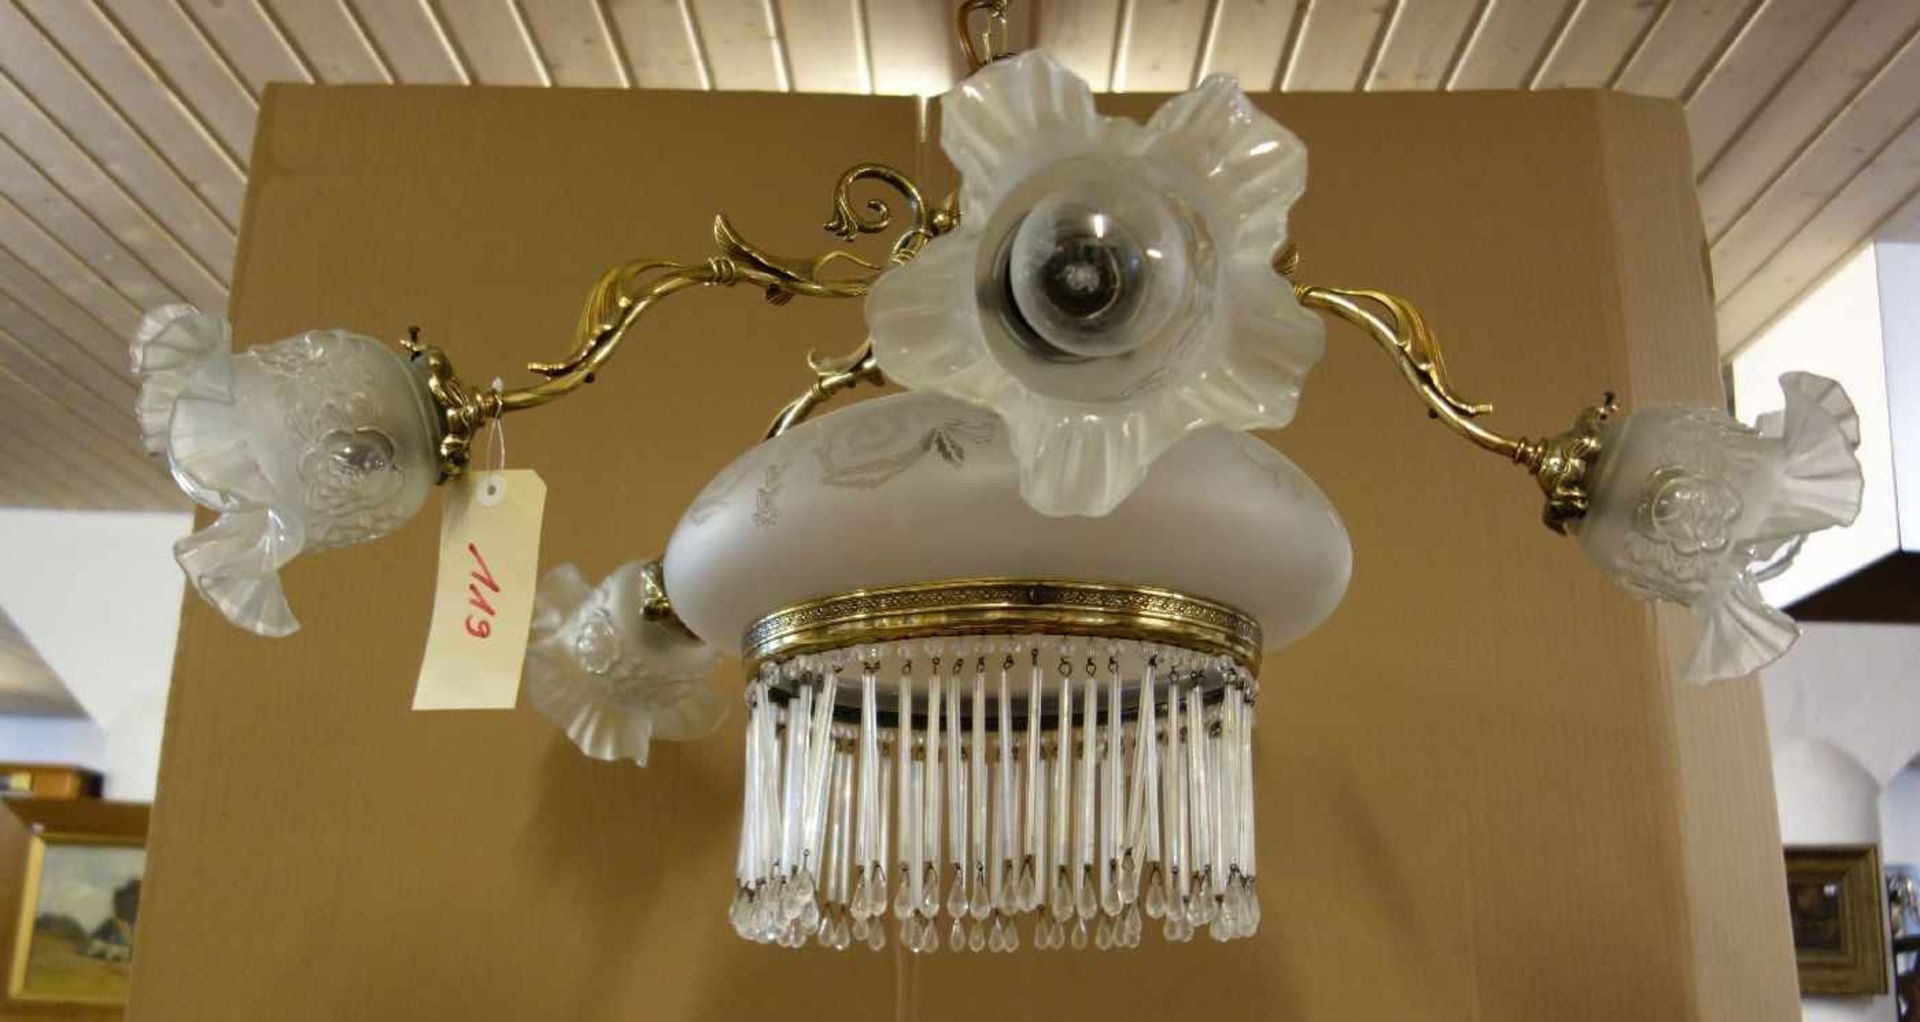 LAMPE / DECKENLEUCHTER im Stil der Zeit um 1900. Bronze-Gelbguss, sechsflammig elektrifiziert. - Image 2 of 4